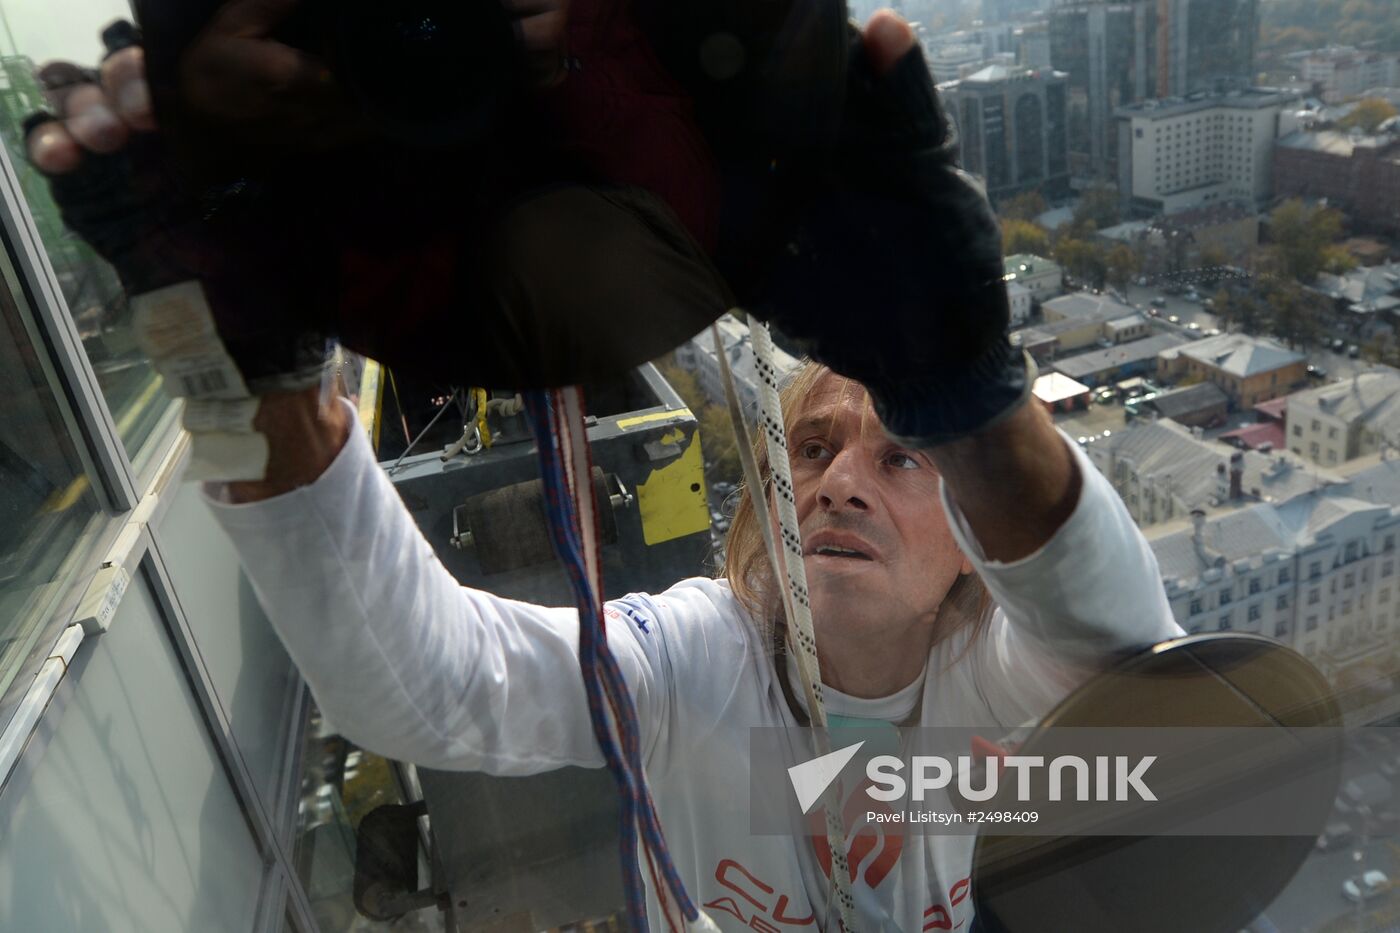 Spiderman Alain Robert conquers Vysotsky skyscraper